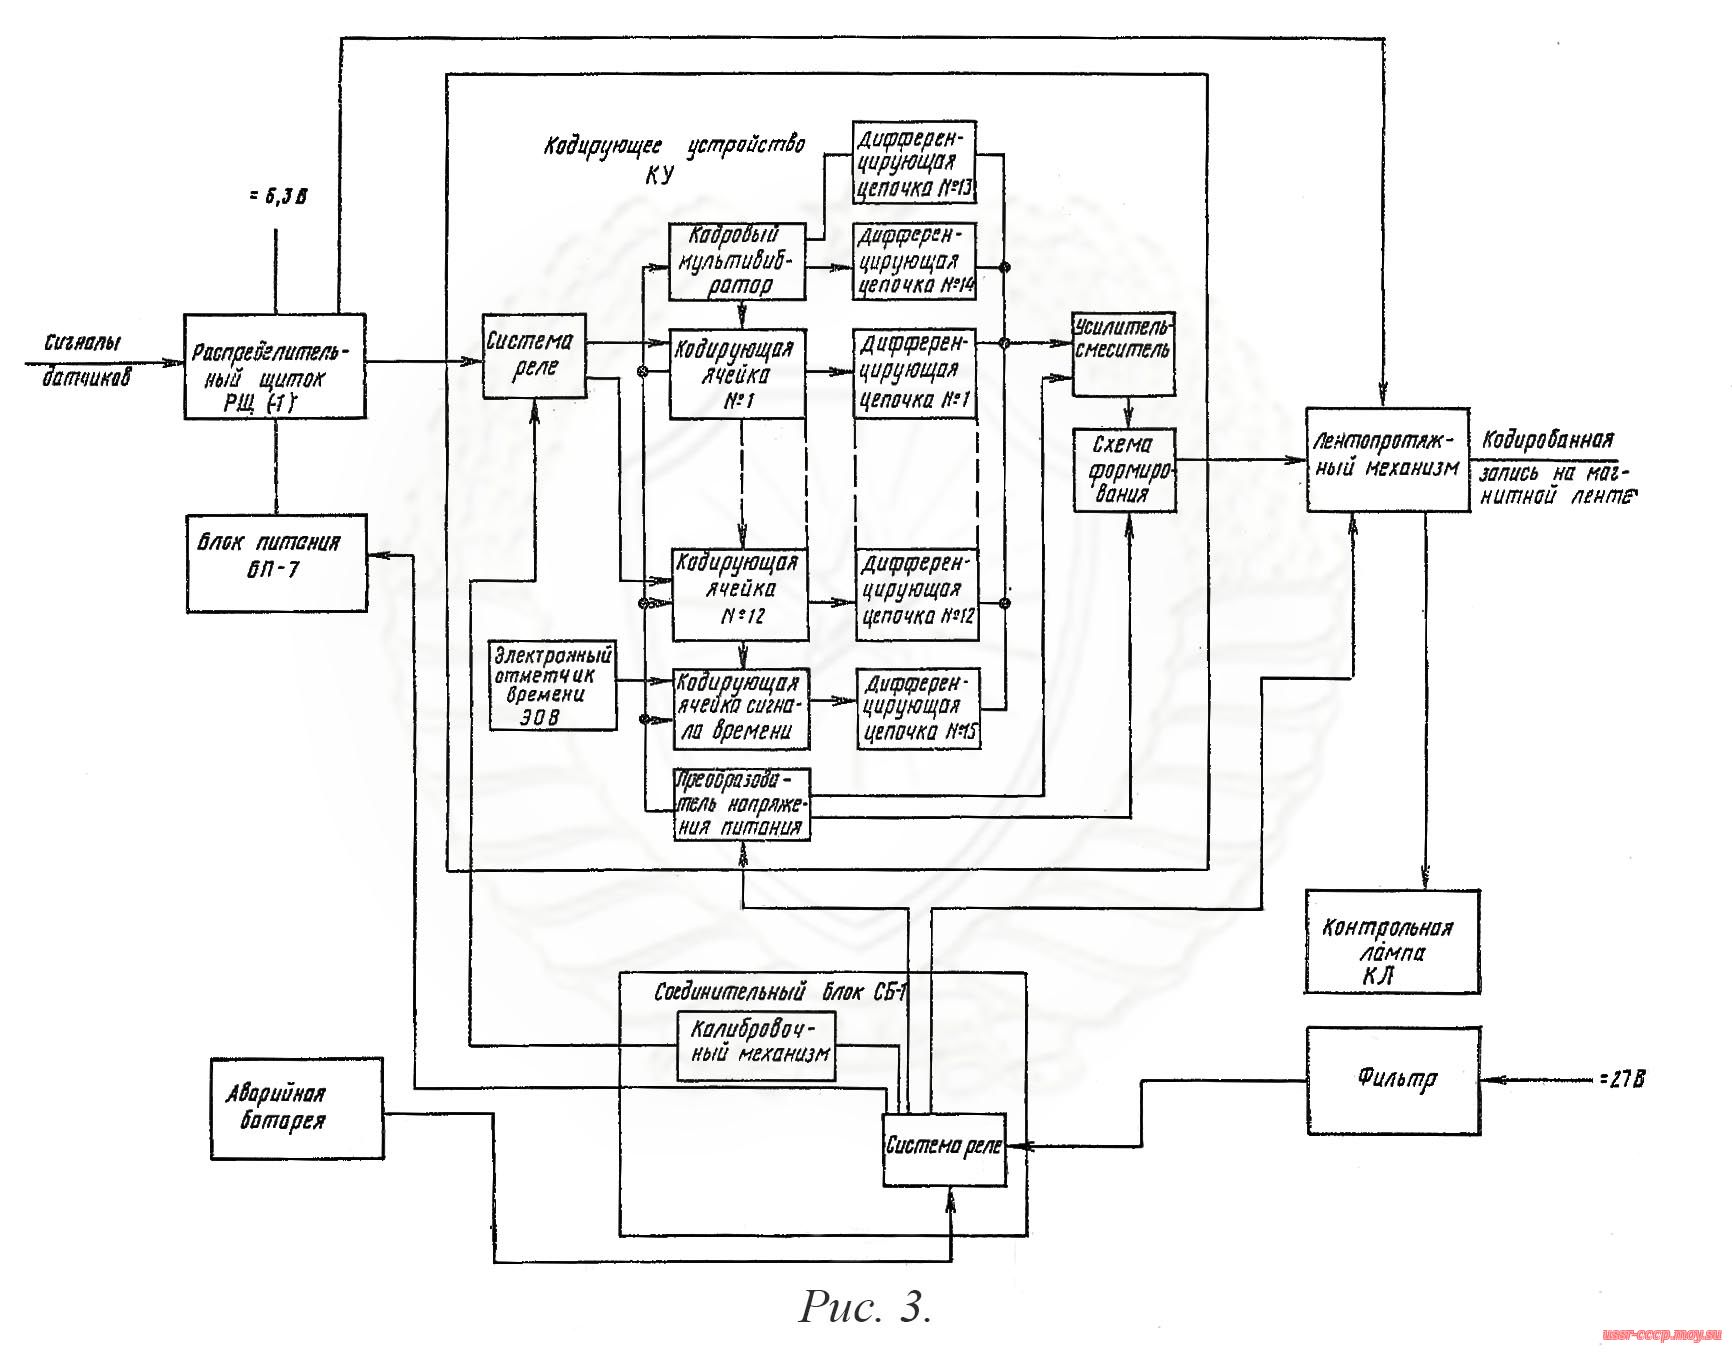 Рис. 3. Схема функциональная системы МСРП-12-96(-1).